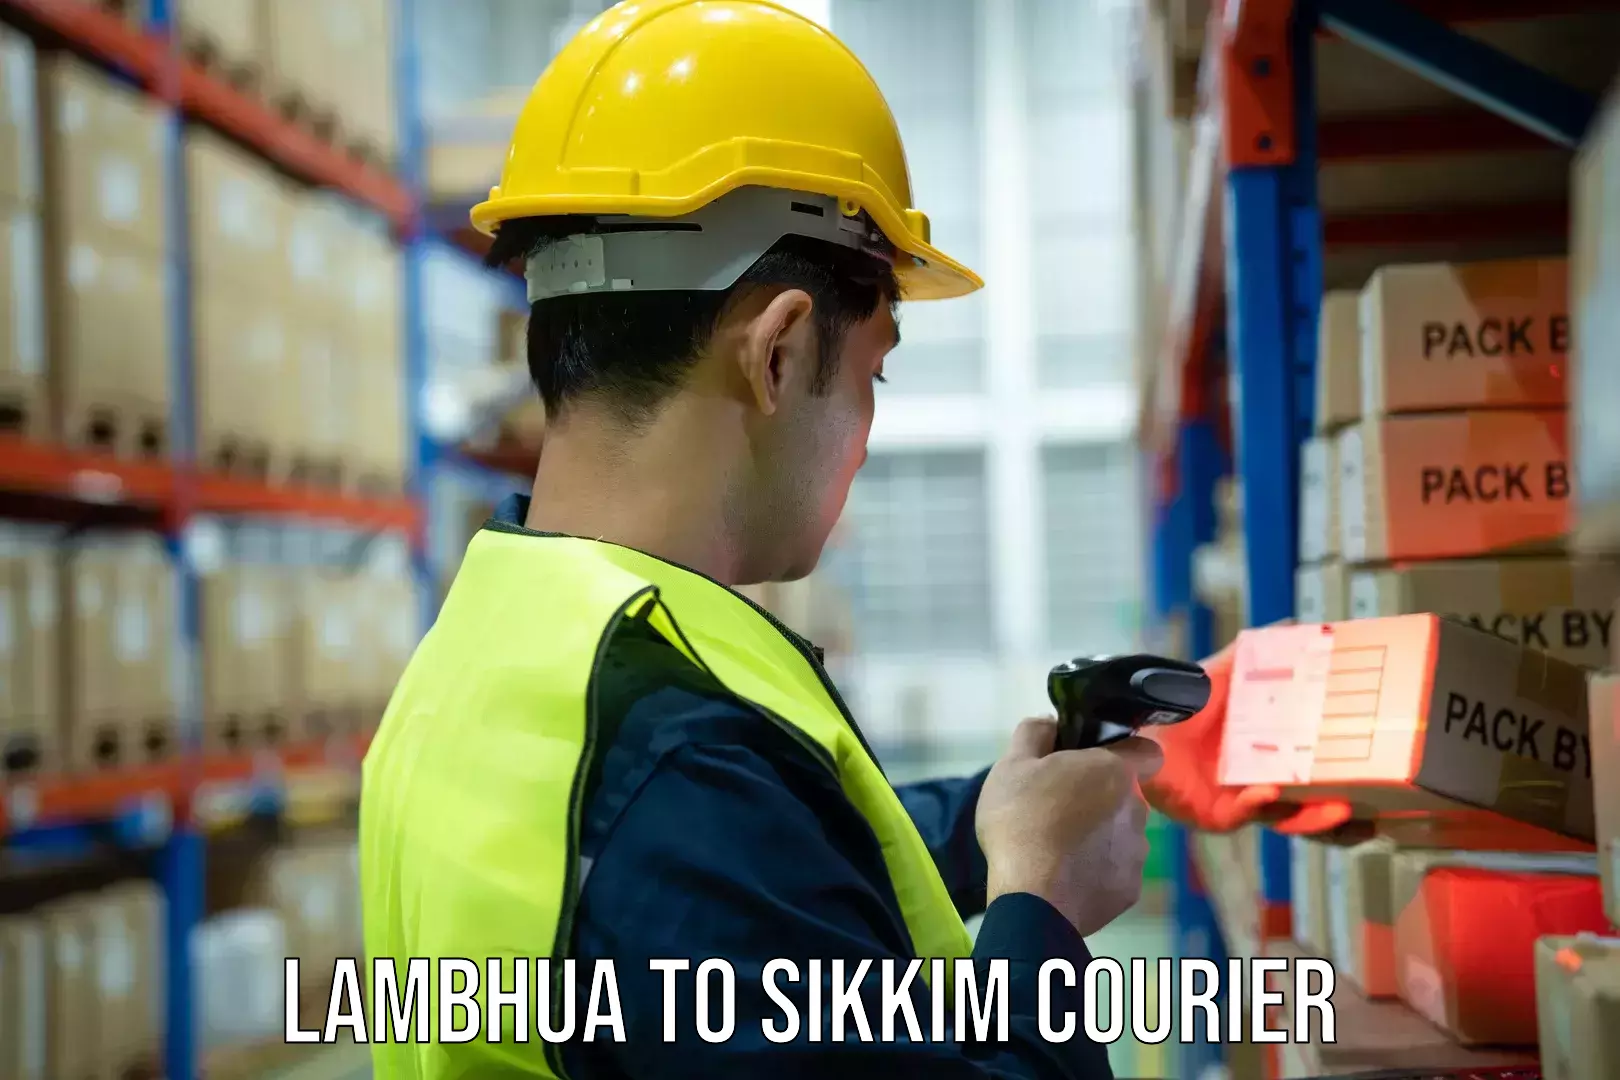 Courier service partnerships Lambhua to Sikkim